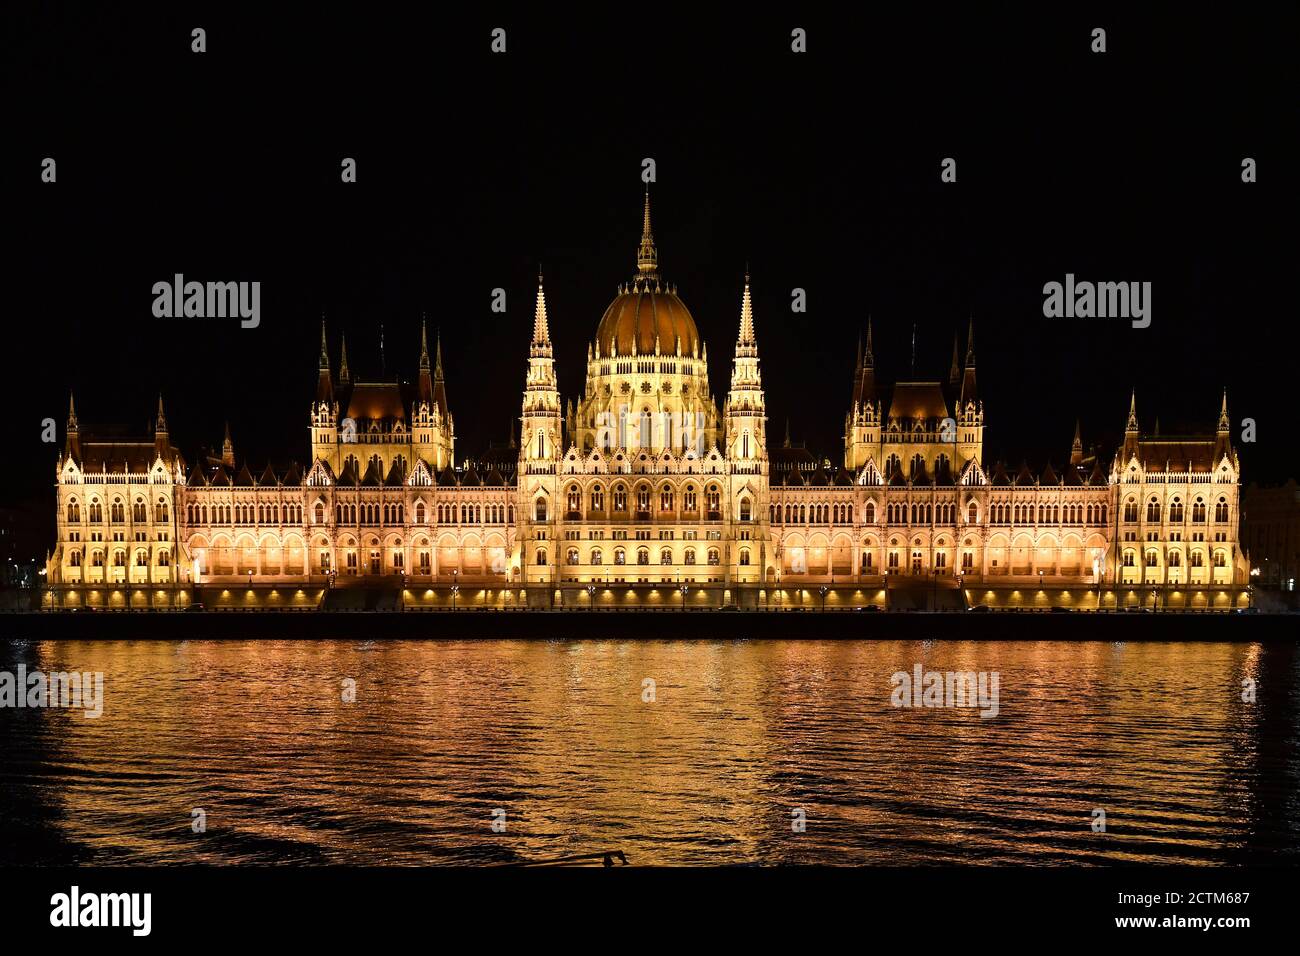 L'edificio del parlamento, nella vecchia Reichstag tedesca, è la sede del parlamento ungherese a Budapest. L'edificio, lungo 268 metri, è situato direttamente sulle rive del Danubio ed è uno dei punti di riferimento di Budapest. 23.09.2020 | utilizzo in tutto il mondo Foto Stock